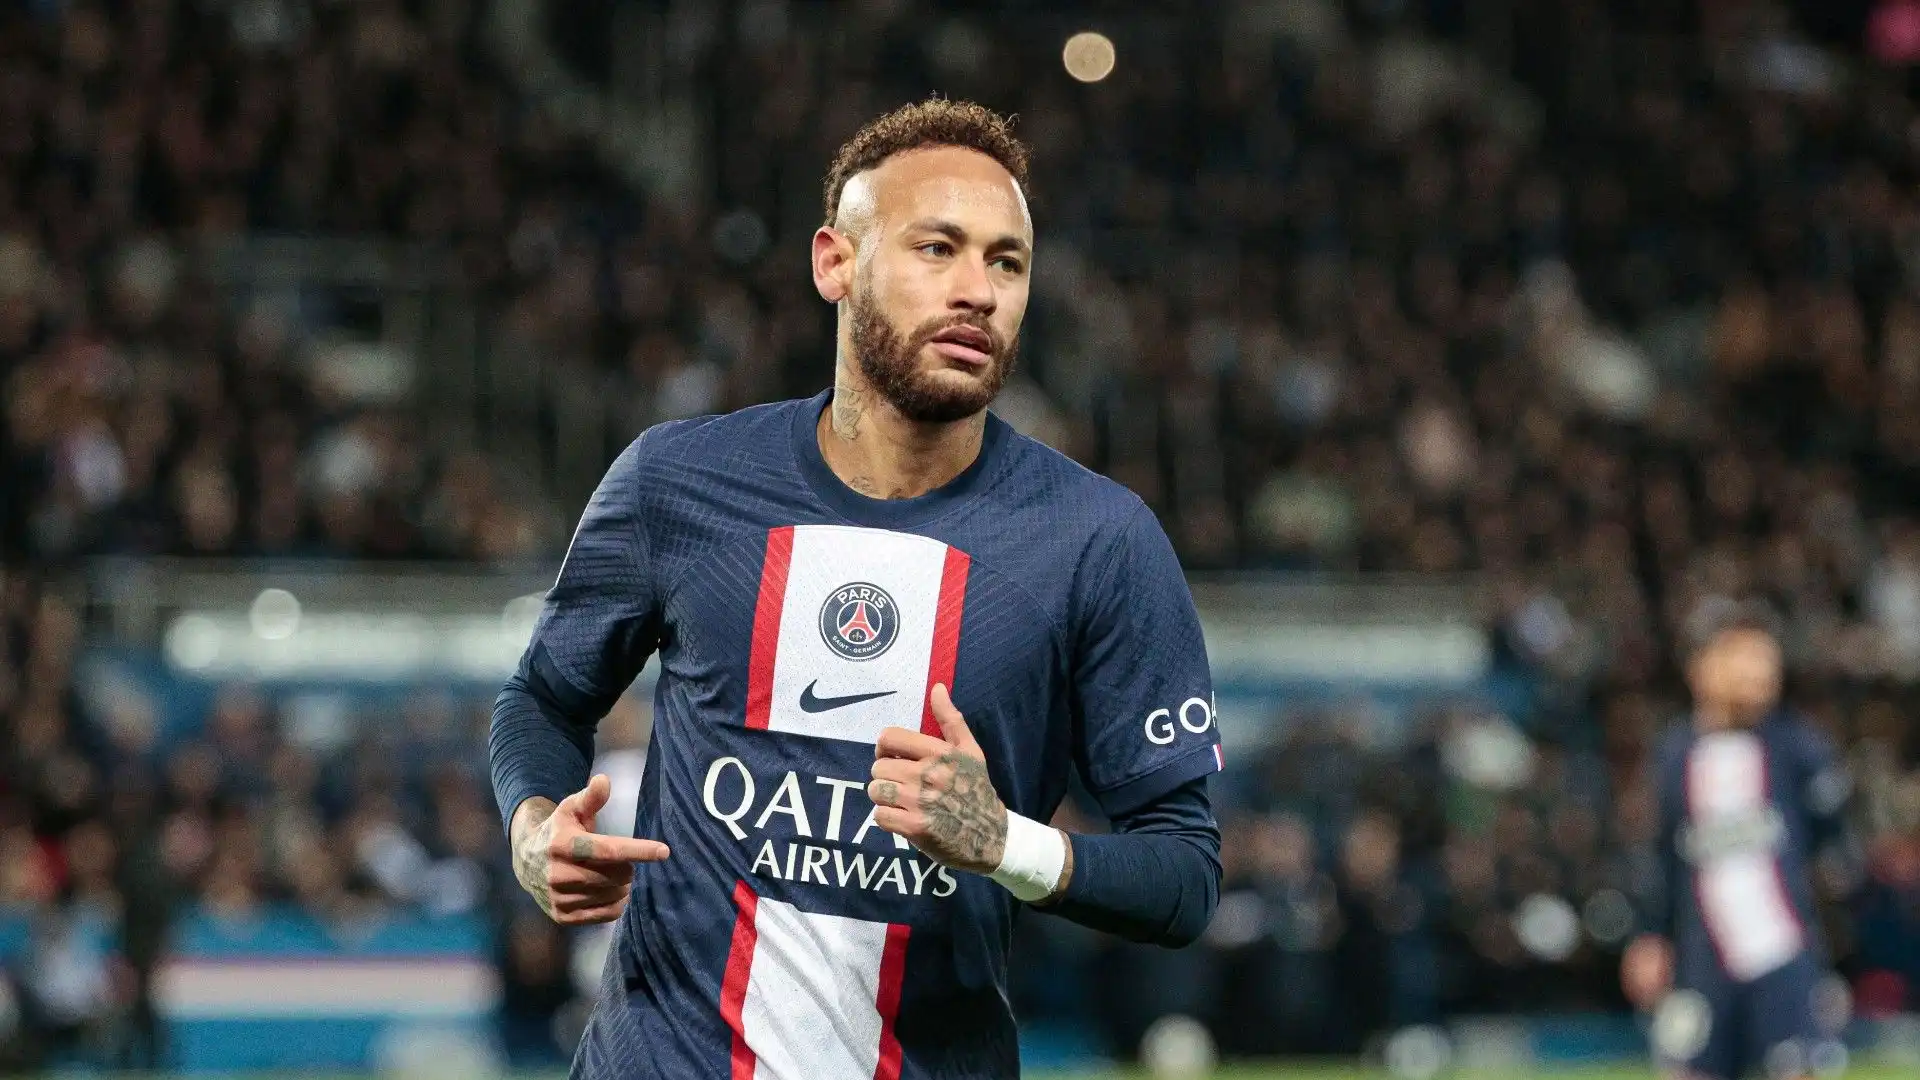 Dotato di grandissima qualità e tecnica, Neymar è tra i calciatori più forti della sua generazione